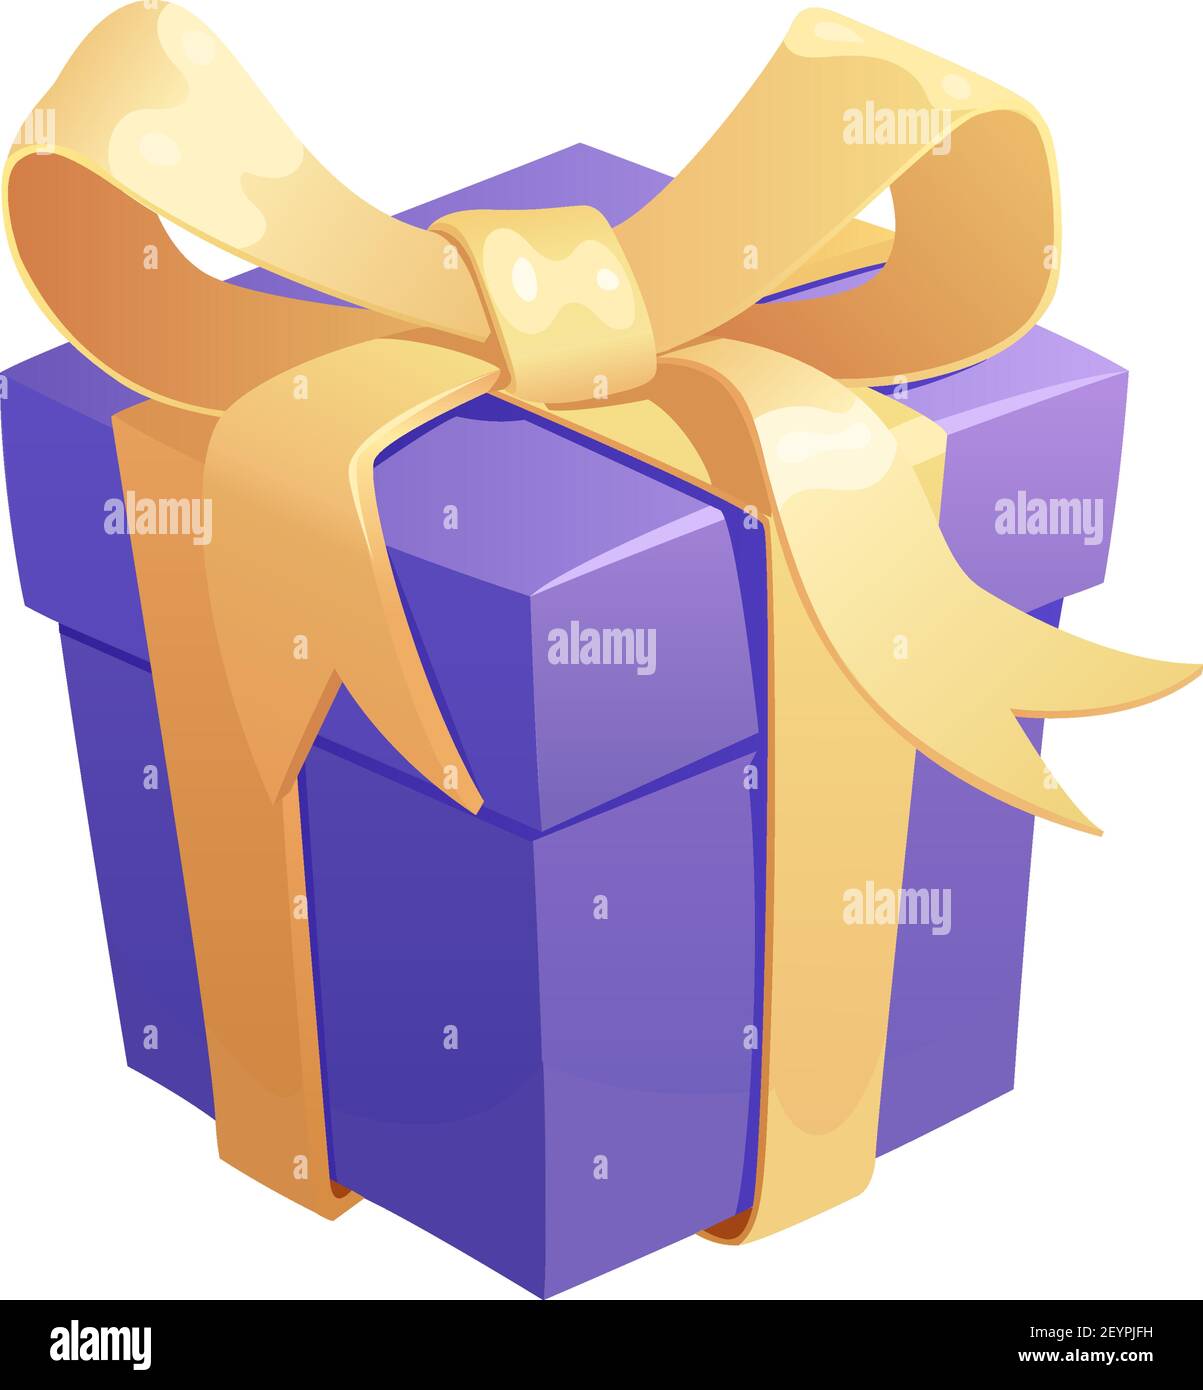 Cuadro de regalo icono de dibujos animados del presente. Caja de regalo y  bolsa de regalo con lazo de cinta para sorpresa de cumpleaños y San  Valentín, Navidad y año Nuevo Imagen